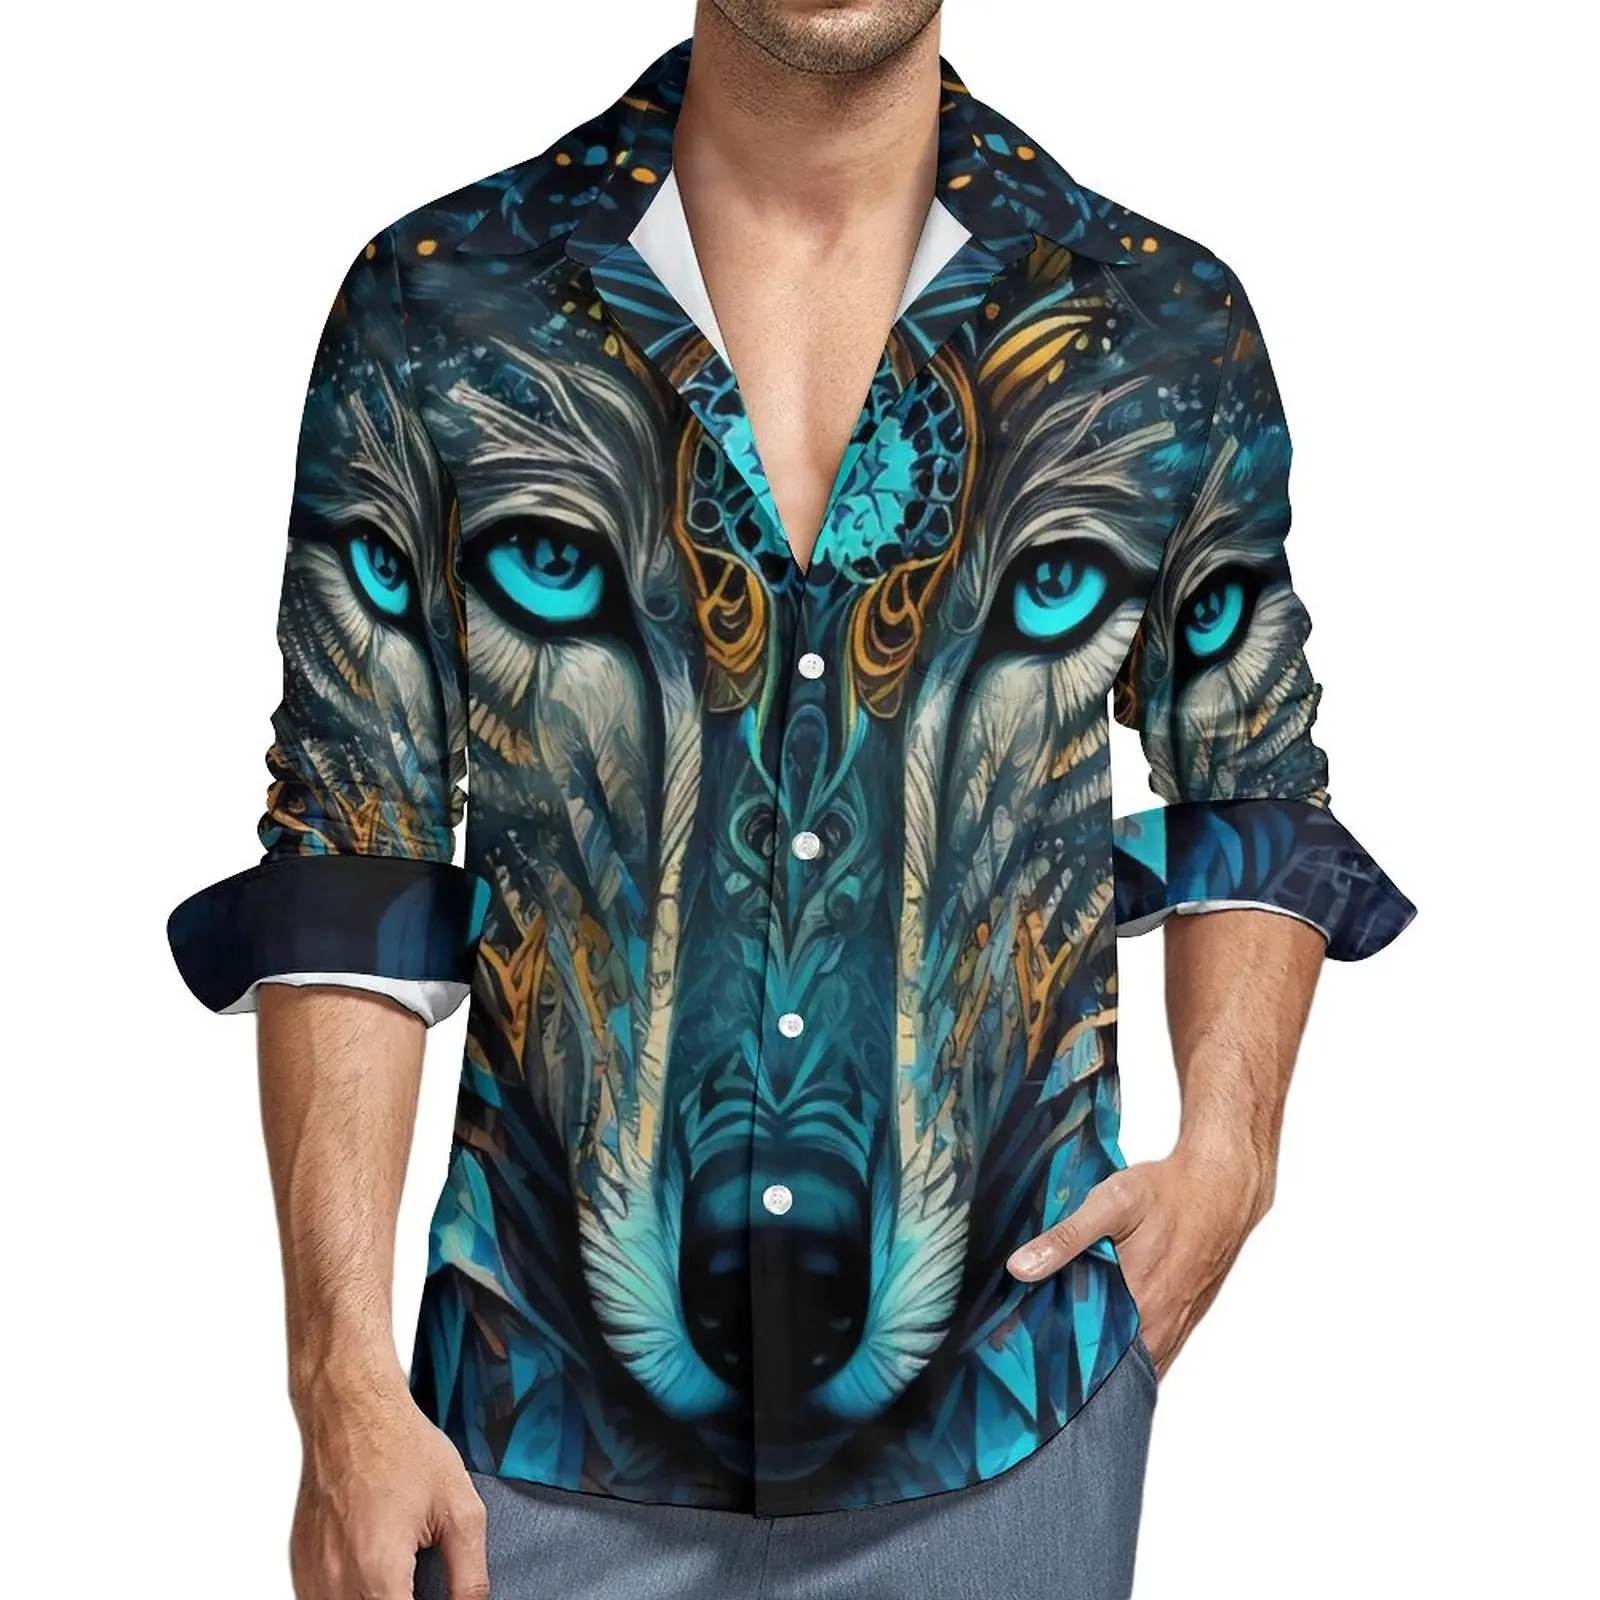   만다라 늑대 남성용 세련된 캐주얼 셔츠, 재미있는 동물 셔츠, 용수철 루즈 블라우스, 긴팔 맞춤형 오버사이즈 의류 